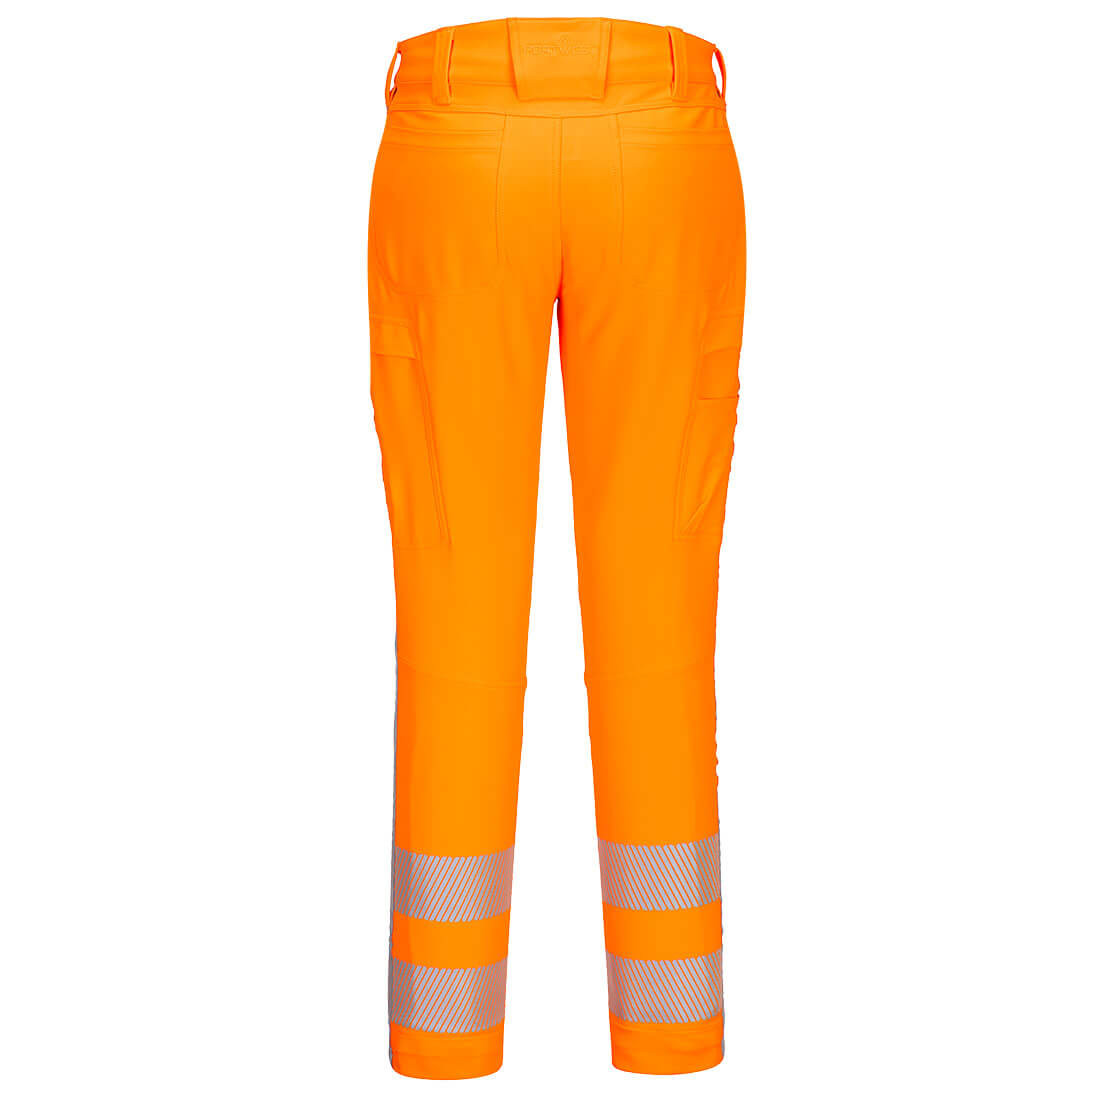 RWS Hi-Vis Stretch Work Trouser - Safetywear